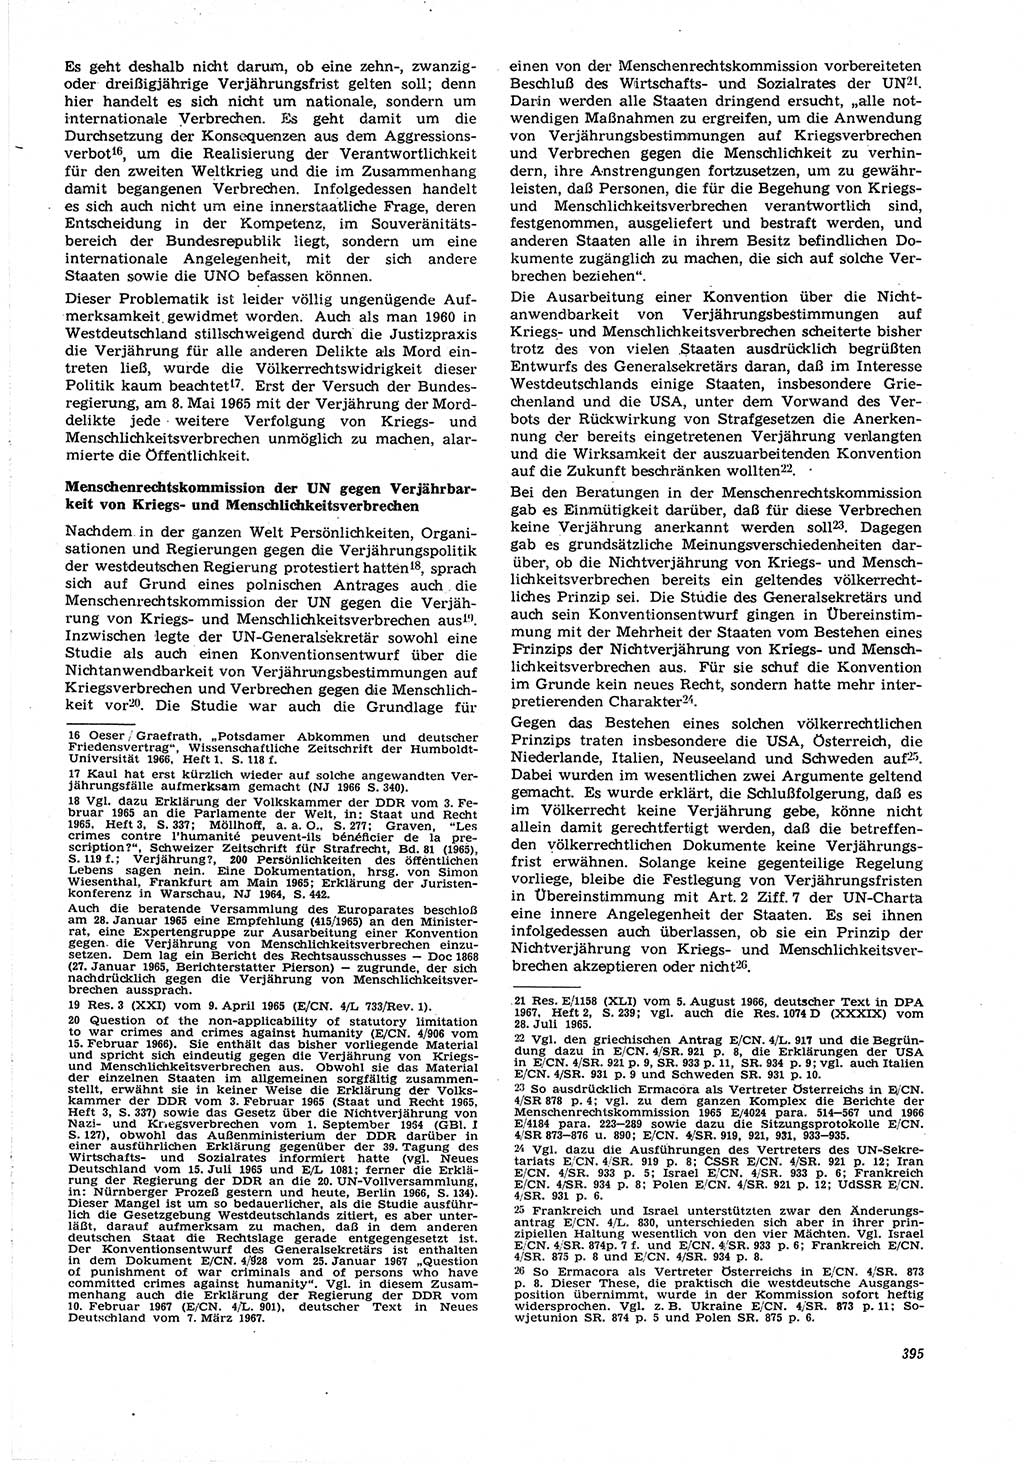 Neue Justiz (NJ), Zeitschrift für Recht und Rechtswissenschaft [Deutsche Demokratische Republik (DDR)], 21. Jahrgang 1967, Seite 395 (NJ DDR 1967, S. 395)